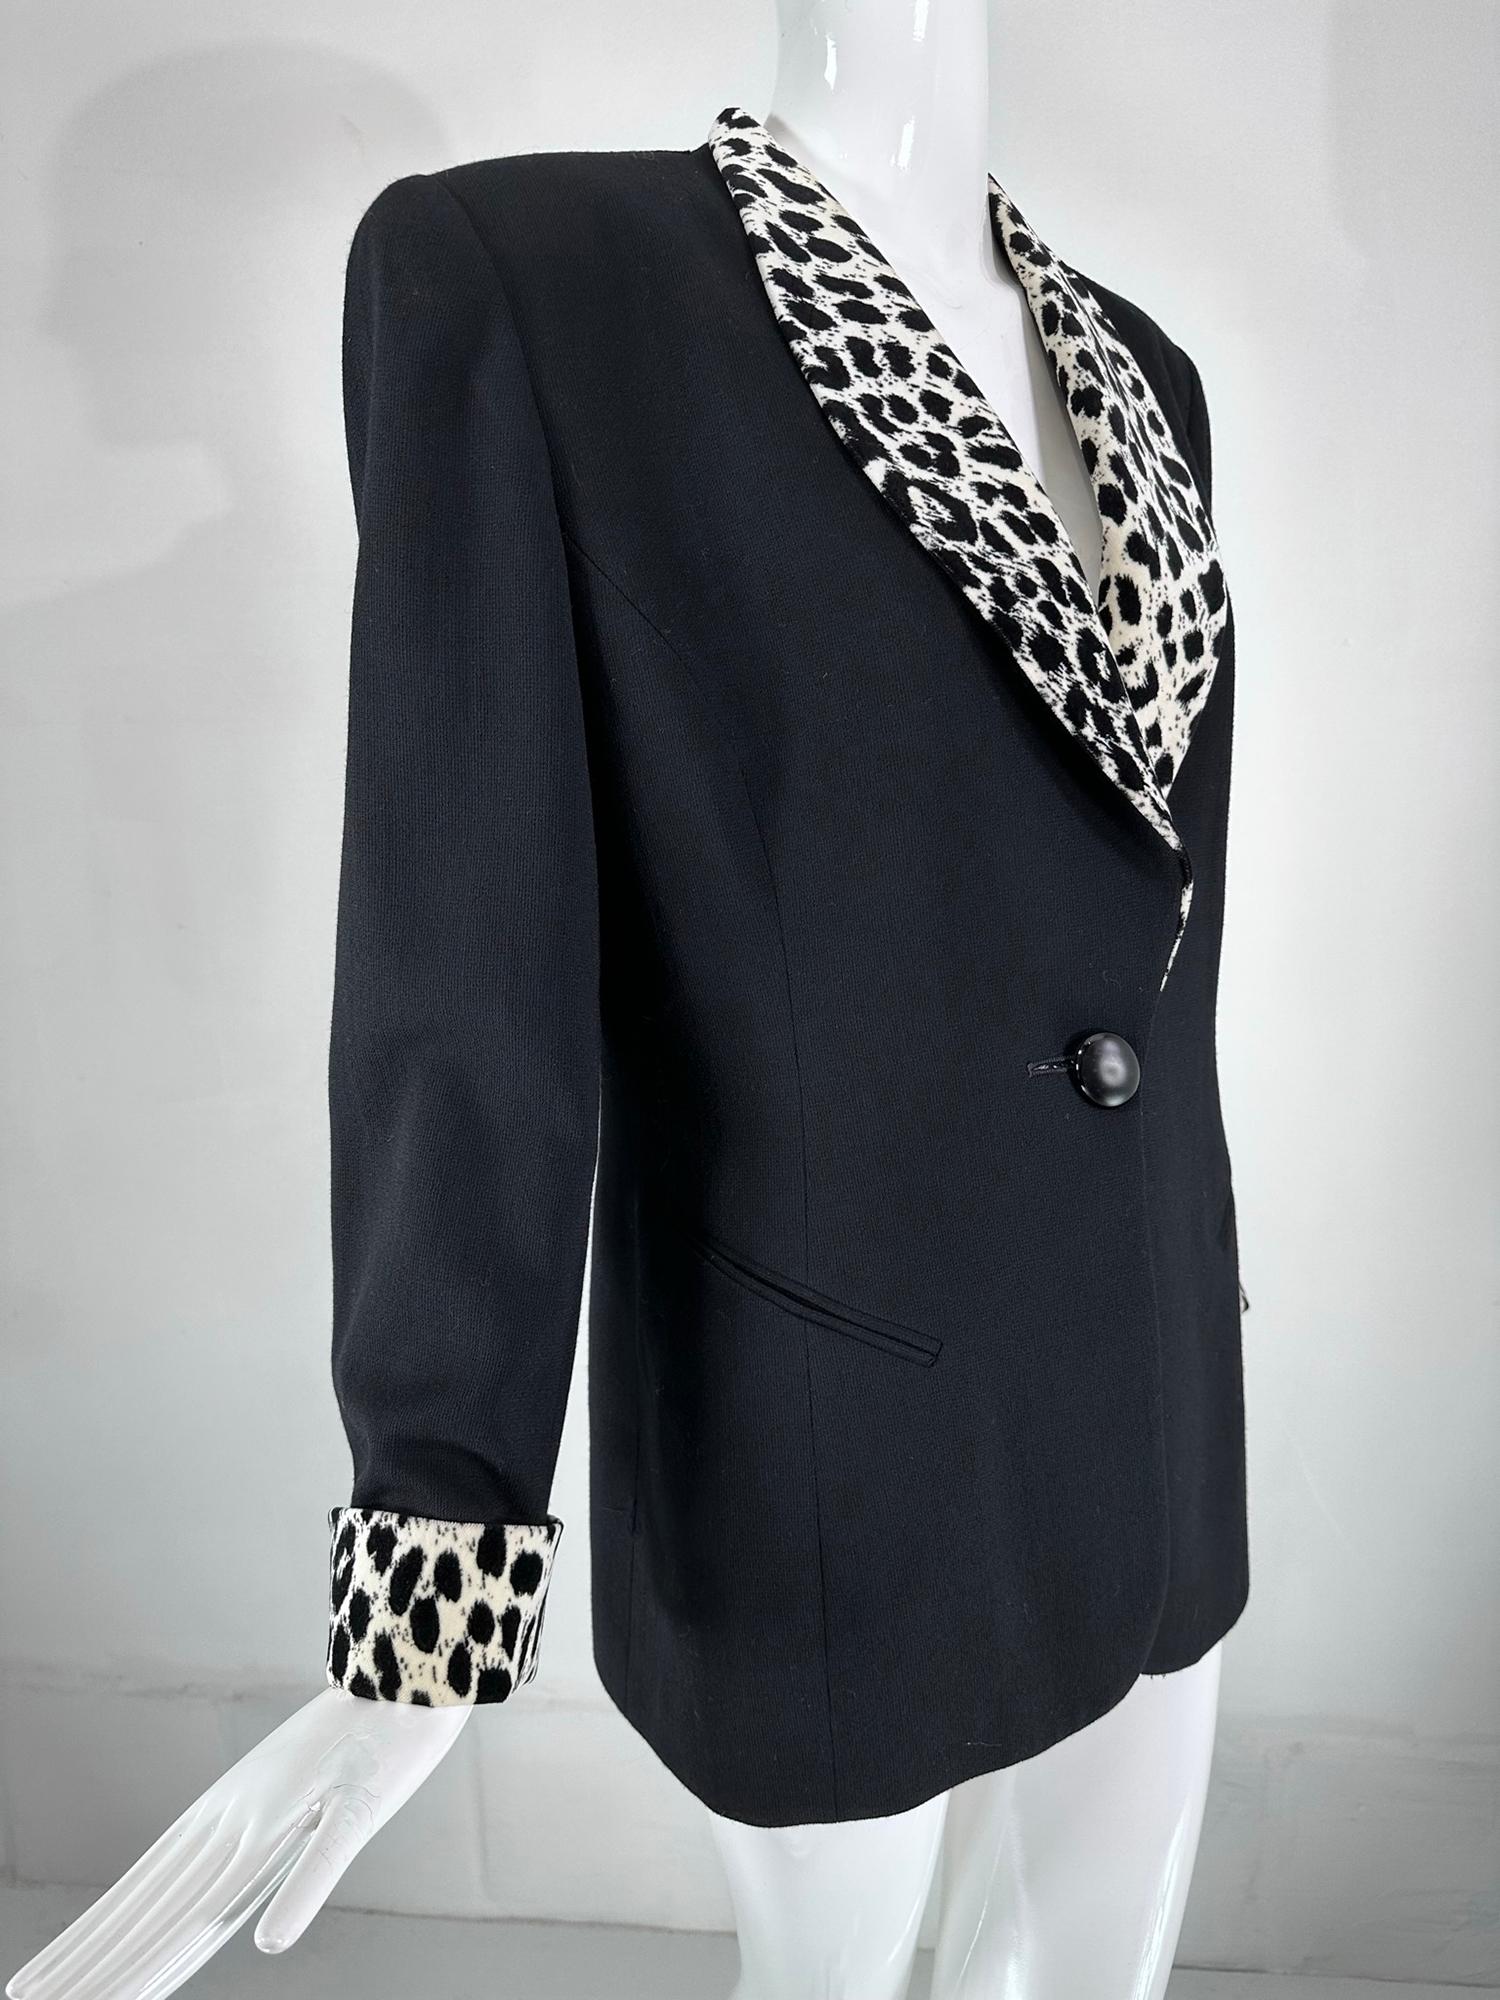 Christian Dior Prinzessin Naht Smoking-Stil Jacke mit Leopard Samt Kragen, Verkleidungen  & Manschetten. Schwarze Jacke aus Woll-Crêpe, taillierte, hüftlange Silhouette, schräge Besentaschen vorne. Einreihige Jacke mit Schalkragen und passenden